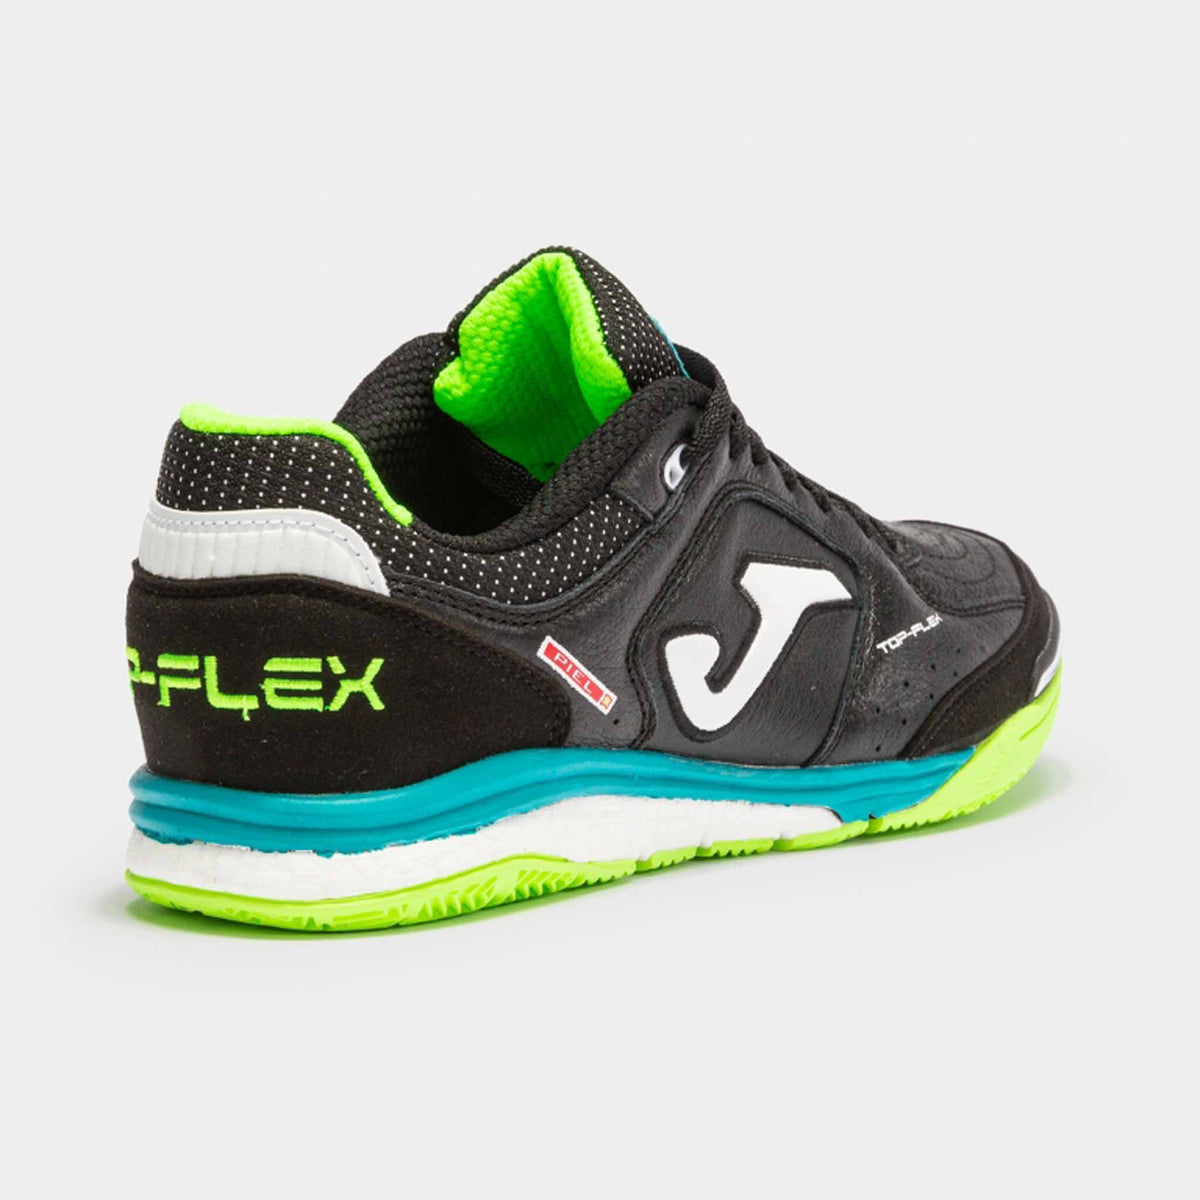 Joma Top Flex Rebound futsal chaussures de soccer interieur adulte - Noir / Vert